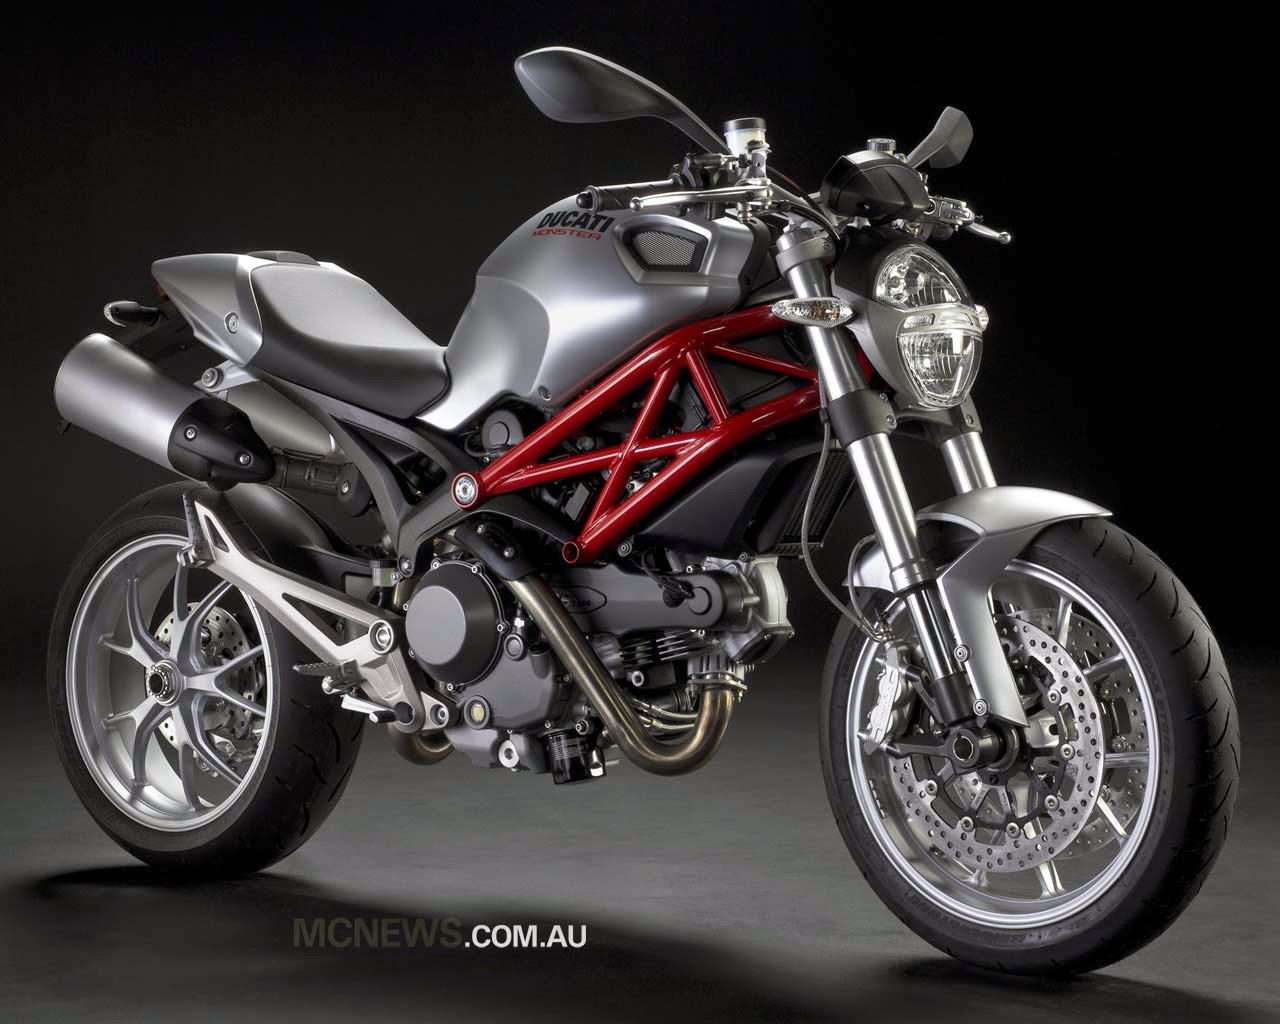 Ninja 250 Modifikasi Ducati Monster - Thecitycyclist